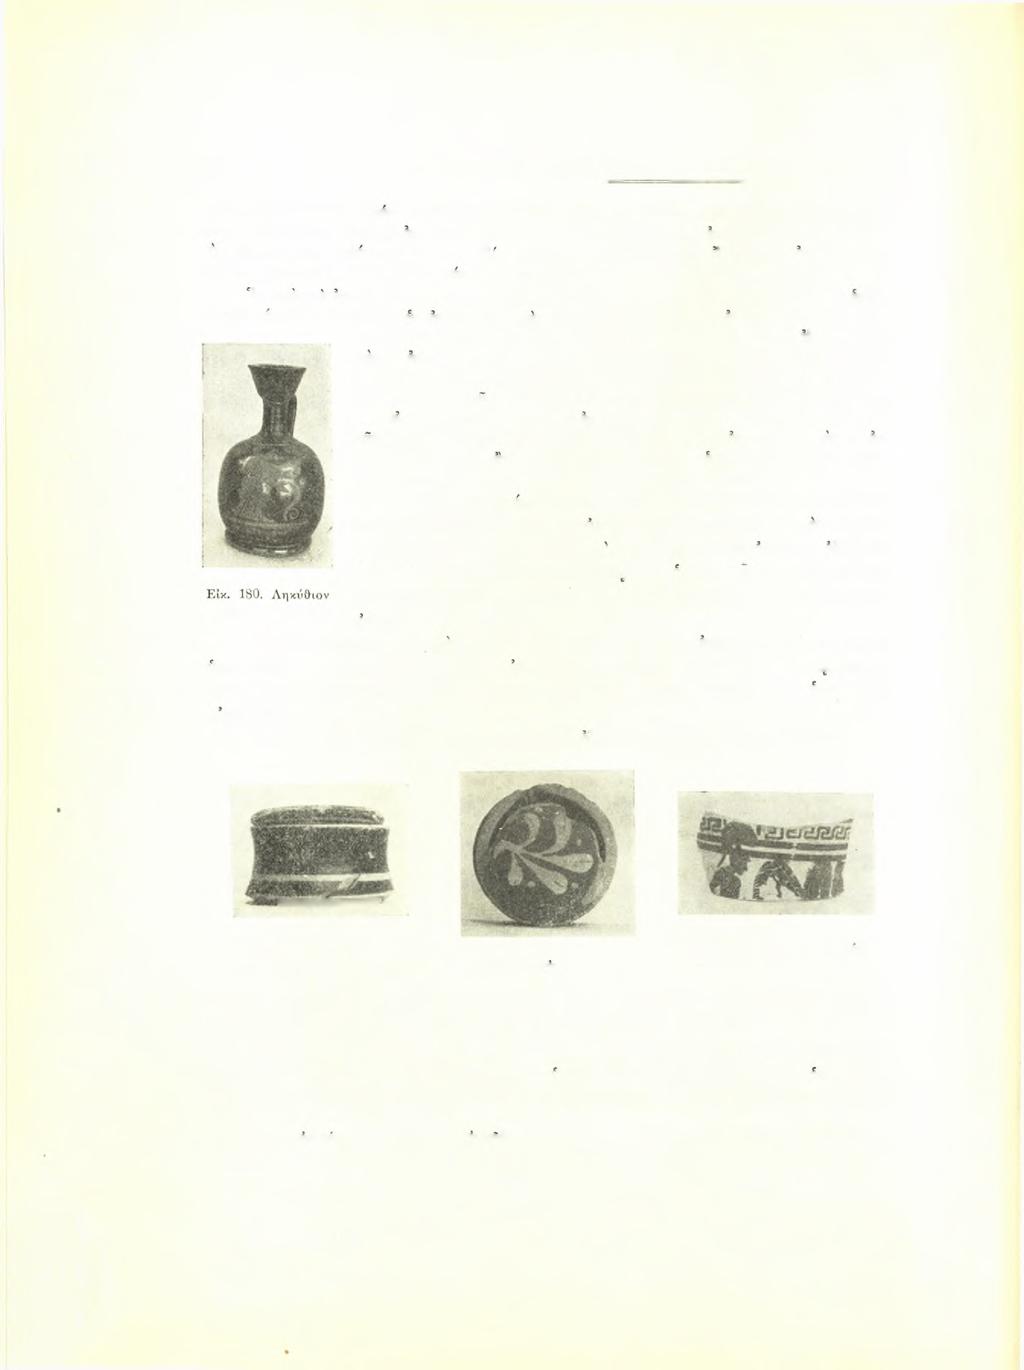 106 Σεραφείμ Ί. Χαριτωνίδβυ ΑΕ 1958 CVA (France 714) Musee Rodin, πίν. 26,11 (άρ. 876), μέ «Νίκην» δεξιά βαίνουσαν, φέρουσαν κίστην (μετέχουσαν συνεπώς επαυλίων πρβλ. XIII 2 σ. 81-82).